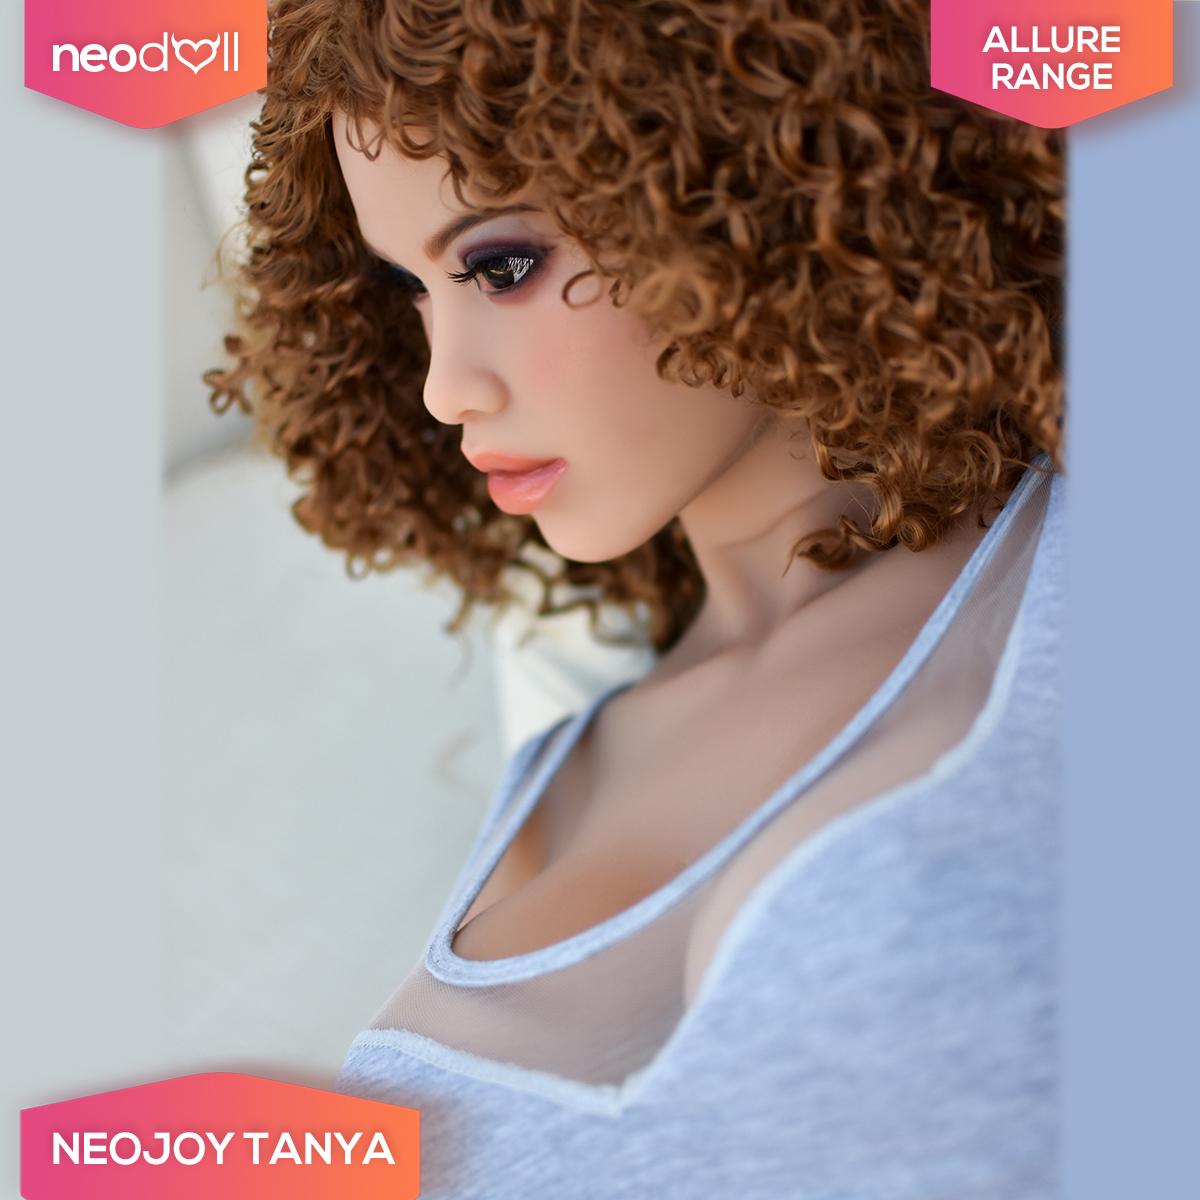 Neodoll Allure Tanya - Realistic Sex Doll - 160cm - Tan